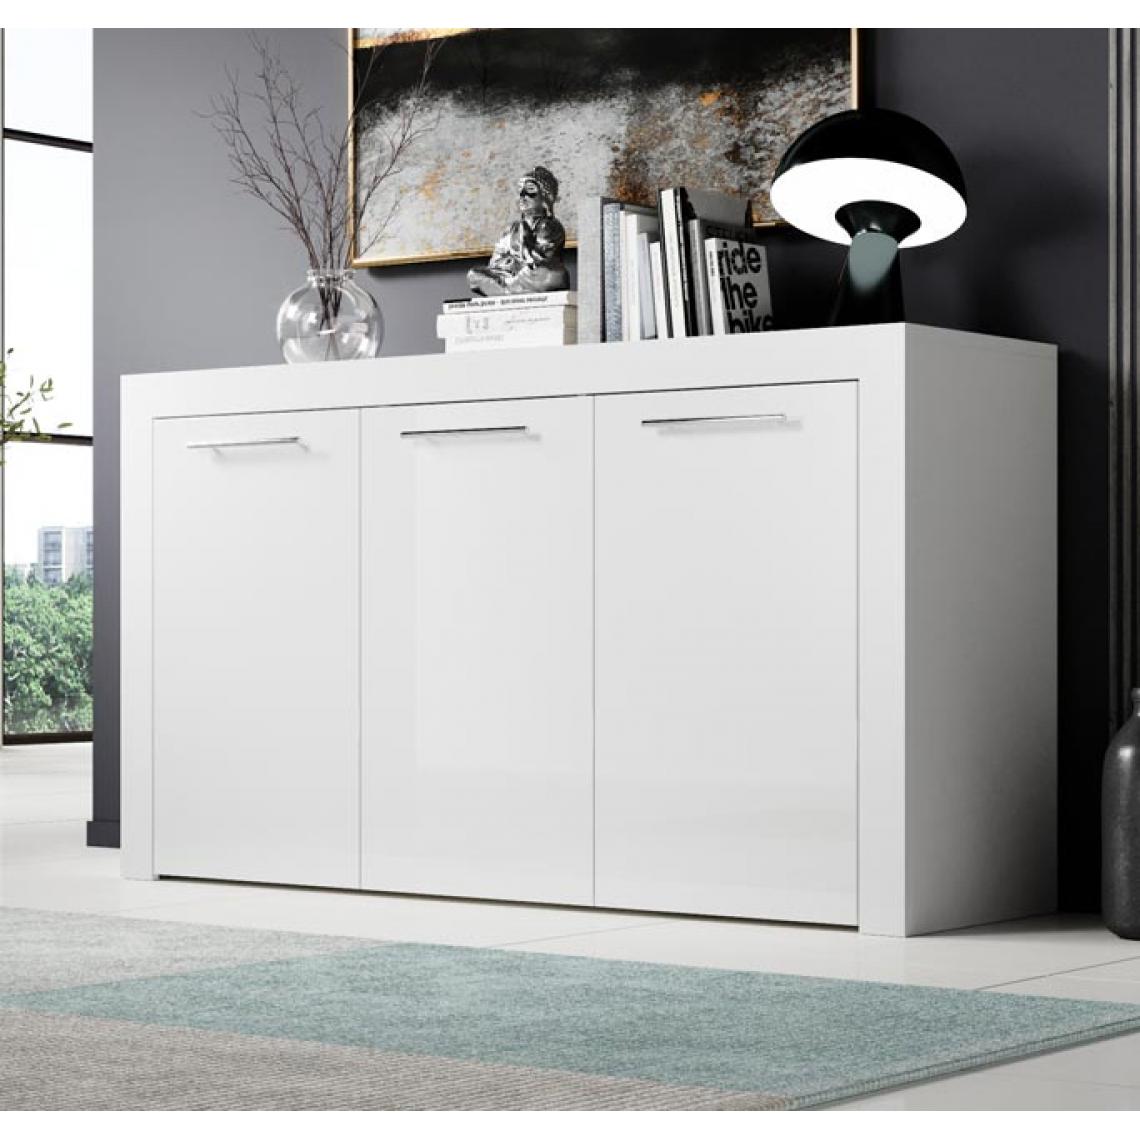 Design Ameublement - Bahut modèle Nelia couleur blanc - Buffets, chiffonniers